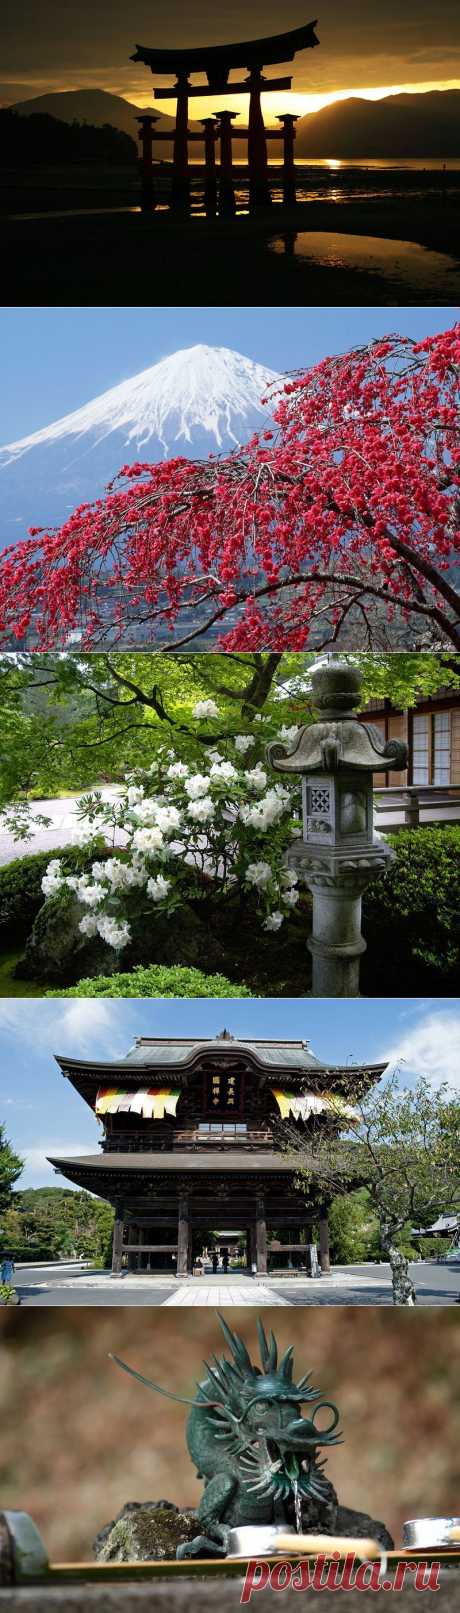 Япония - страна, сочетающая традиции и современность. Часть 10.